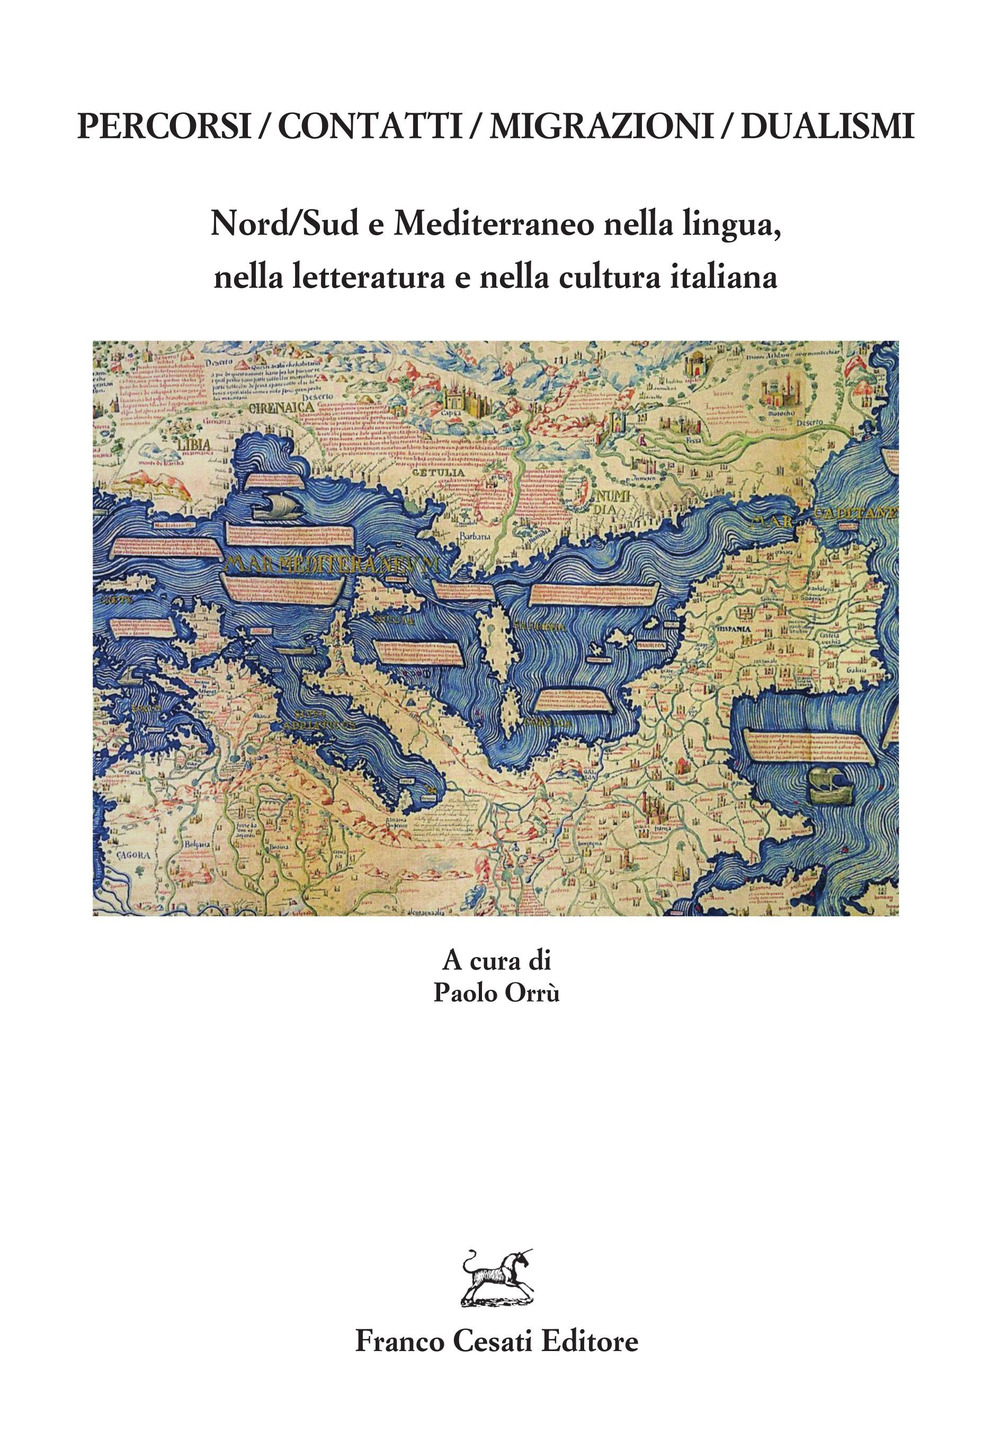 Percorsi/contatti/migrazioni/dualismi. Nord/Sud e Mediterraneo nella lingua, nella letteratura e nella cultura italiana